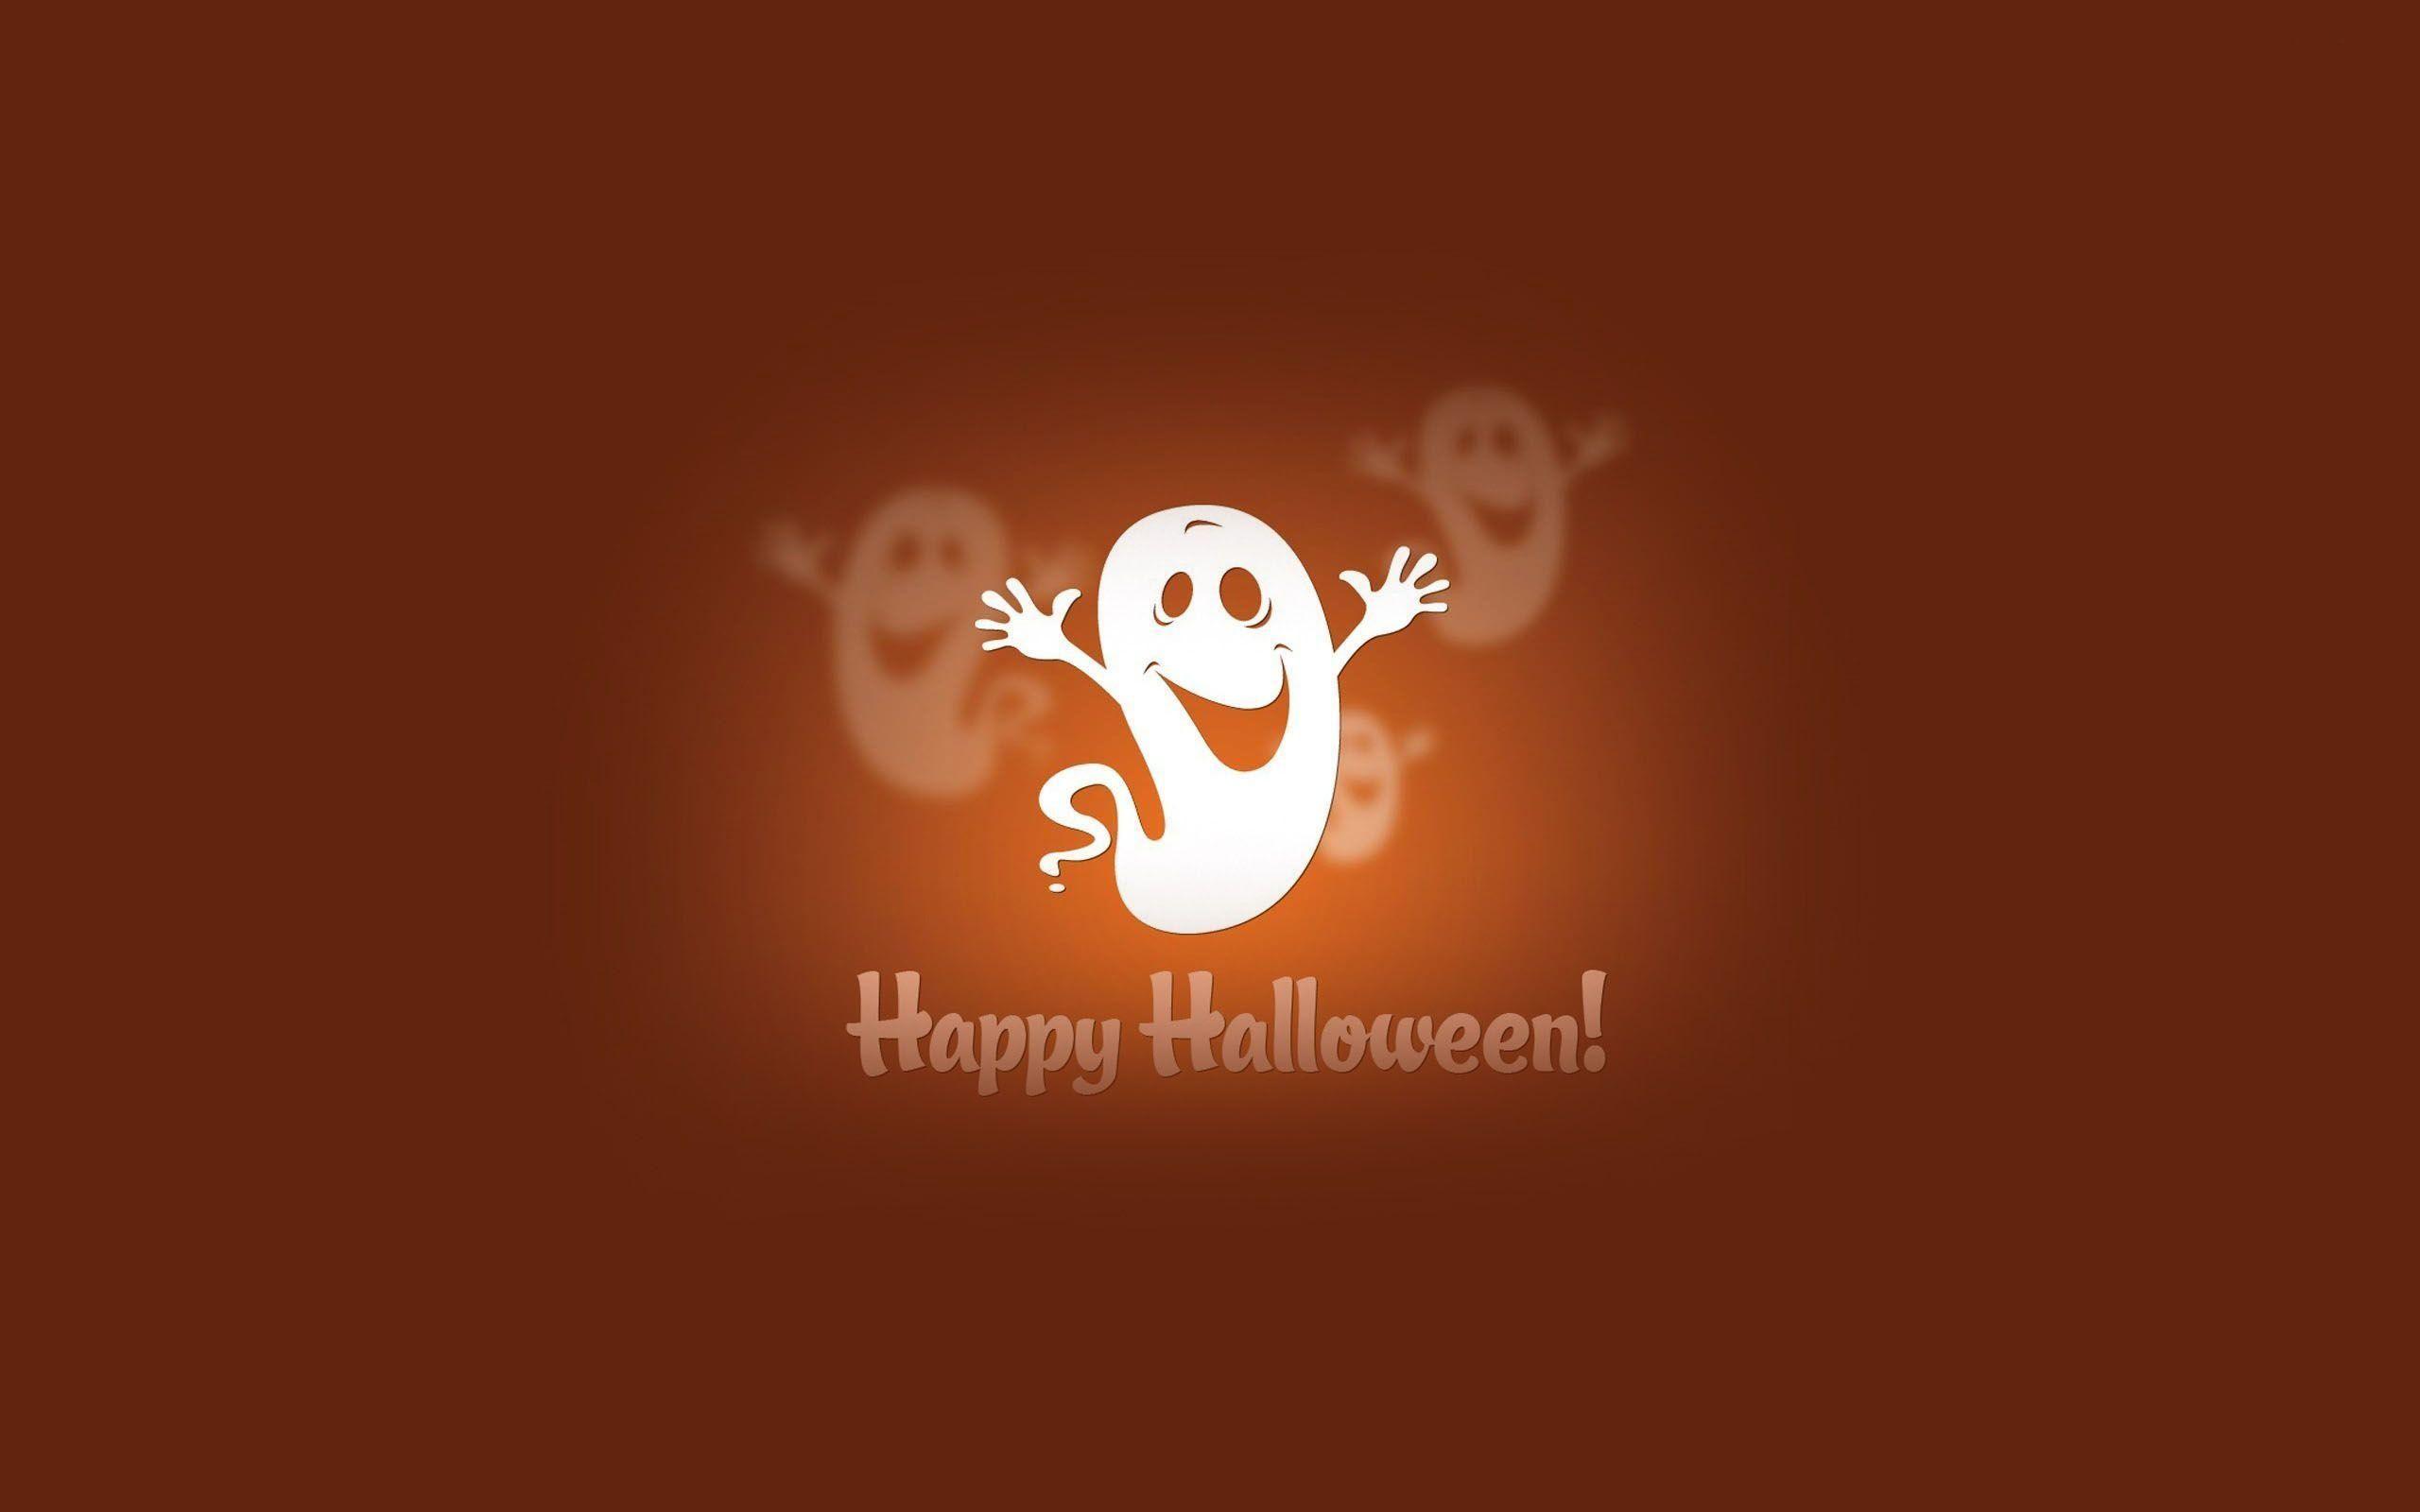 Happy Halloween HD Wallpapers - Top Free Happy Halloween HD Backgrounds ...